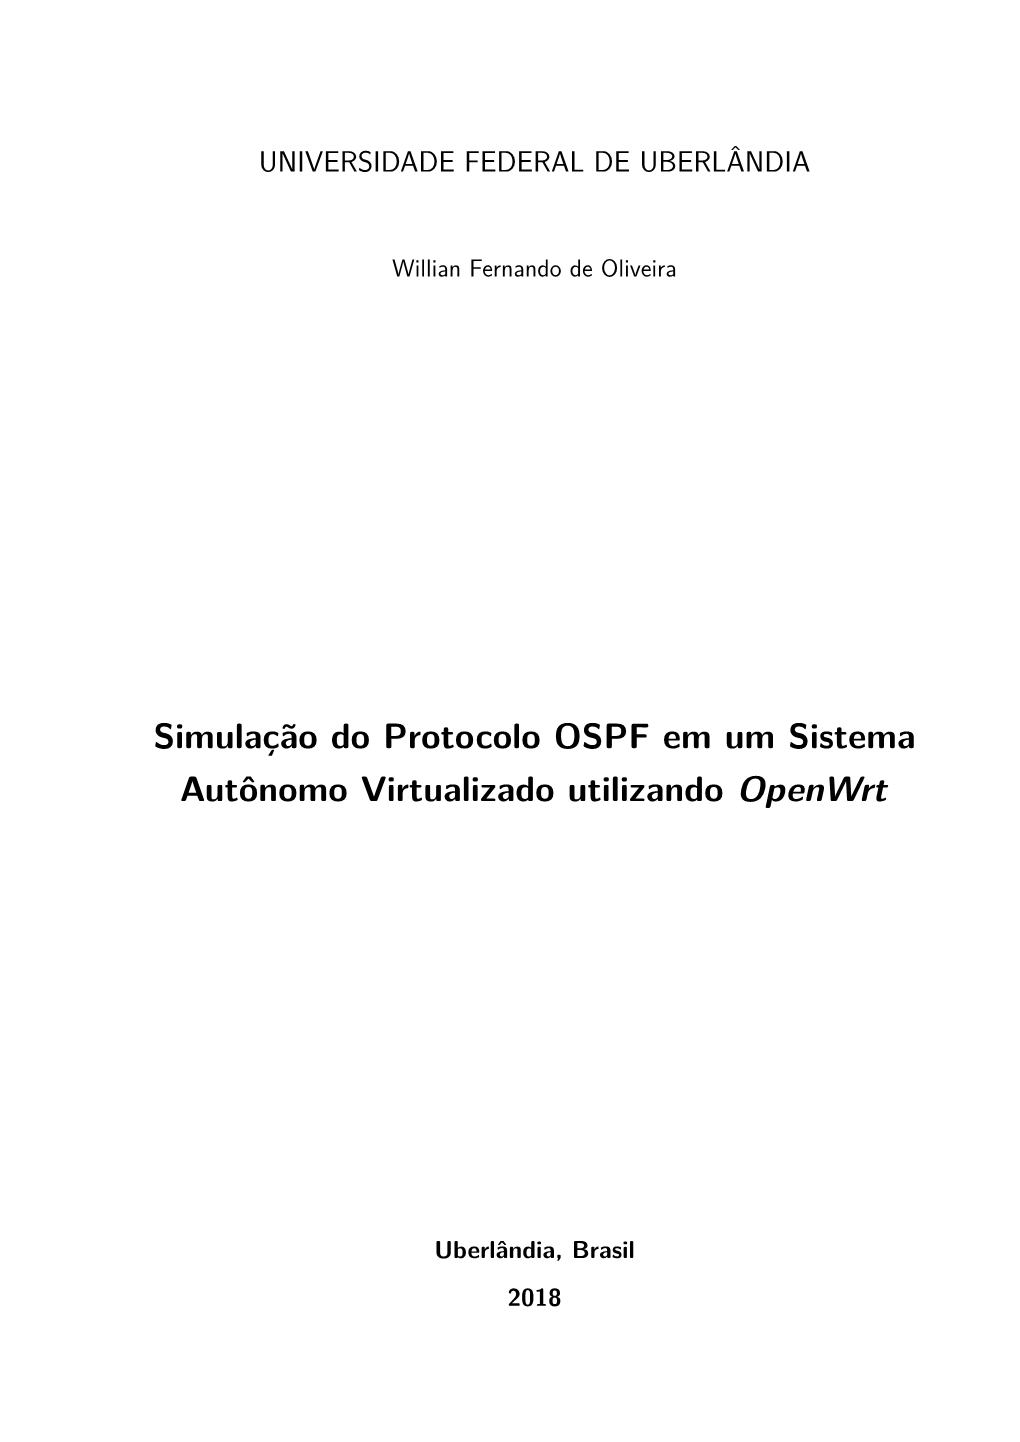 Simulação Do Protocolo OSPF Em Um Sistema Autônomo Virtualizado Utilizando Openwrt